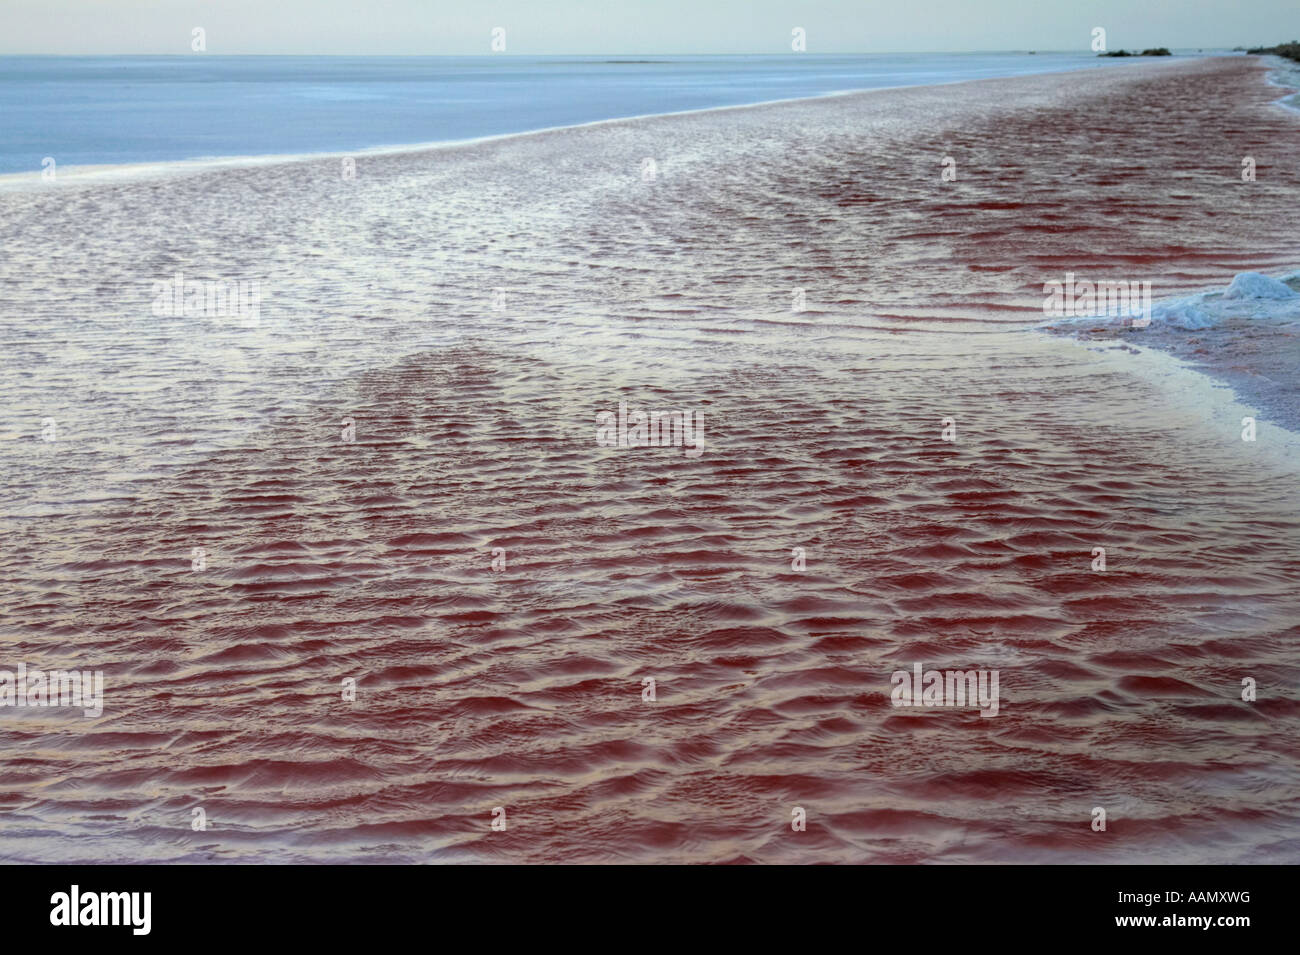 Rosa super saturada de sal en el borde del lago de aguas salinas chott el djerid Túnez Foto de stock